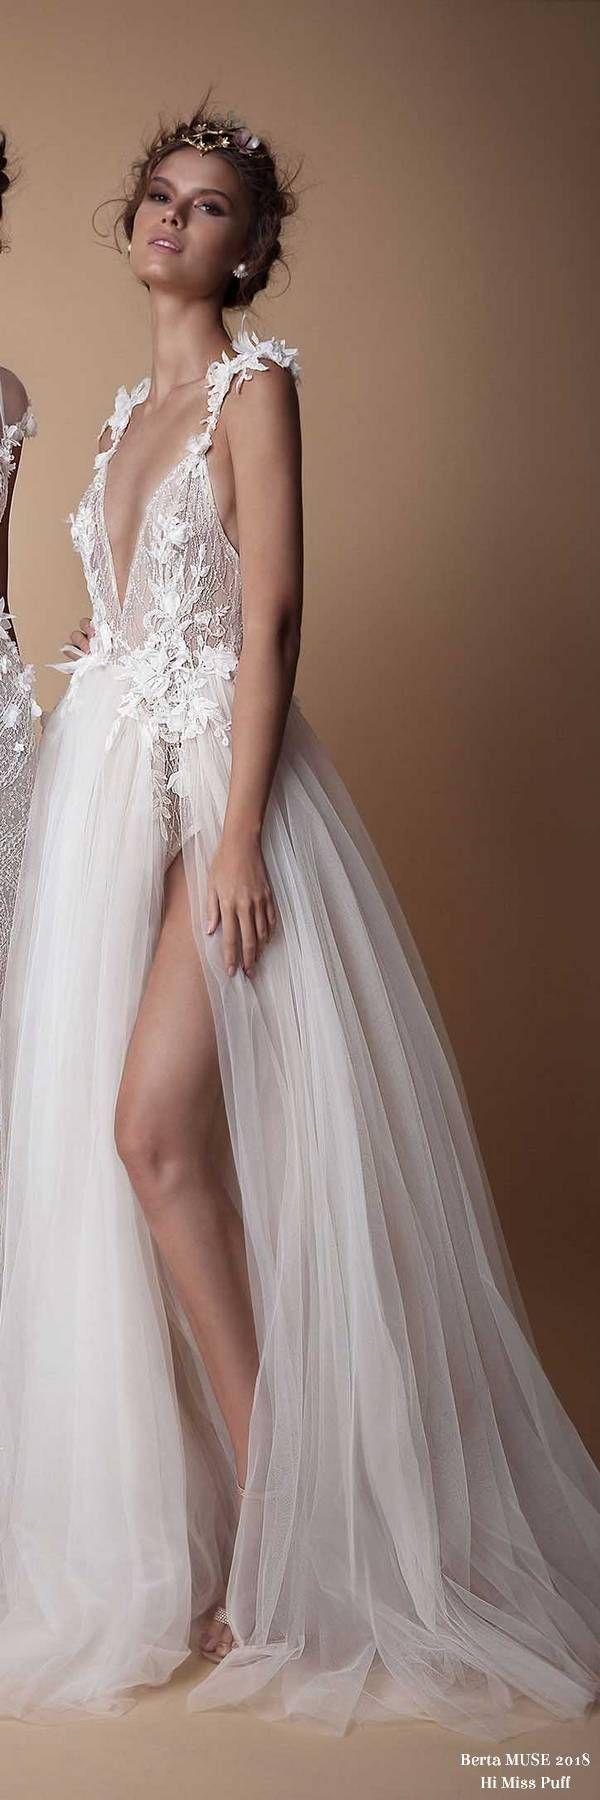 Hochzeit - Berta MUSE Wedding Dress Collection2018